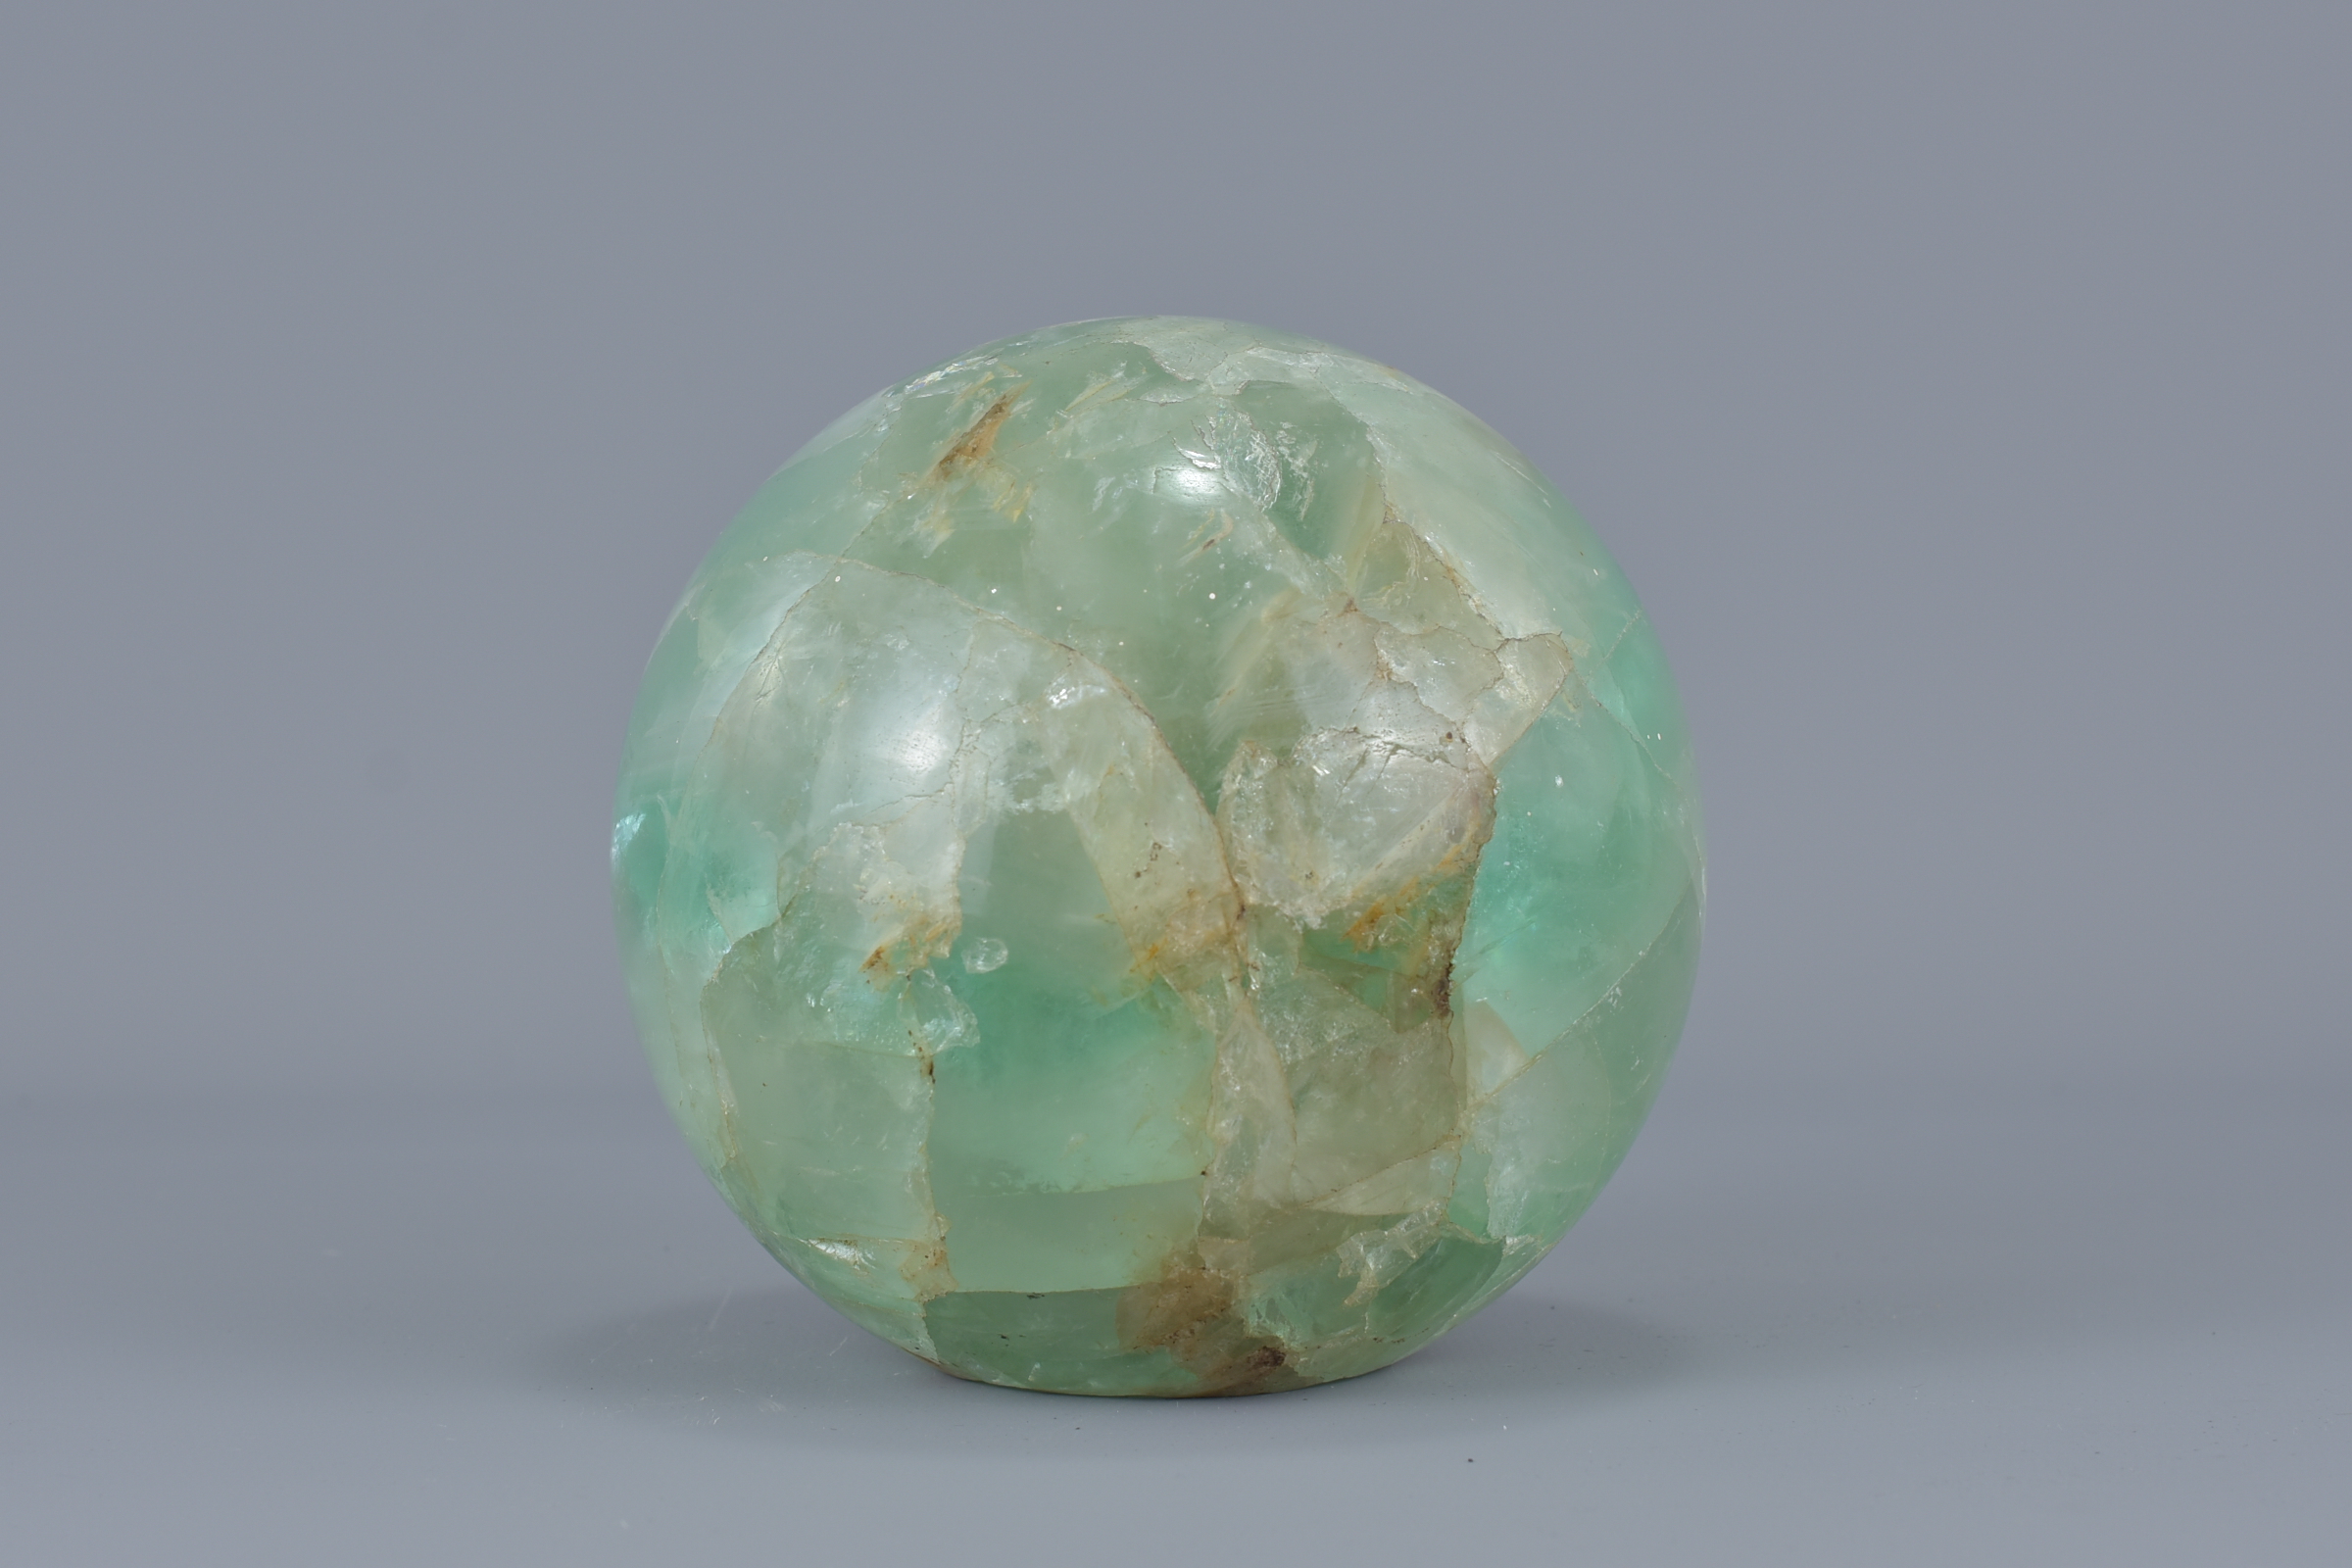 A Chinese green quartz stone ball hollowed. 6.5cm x 6.5cm